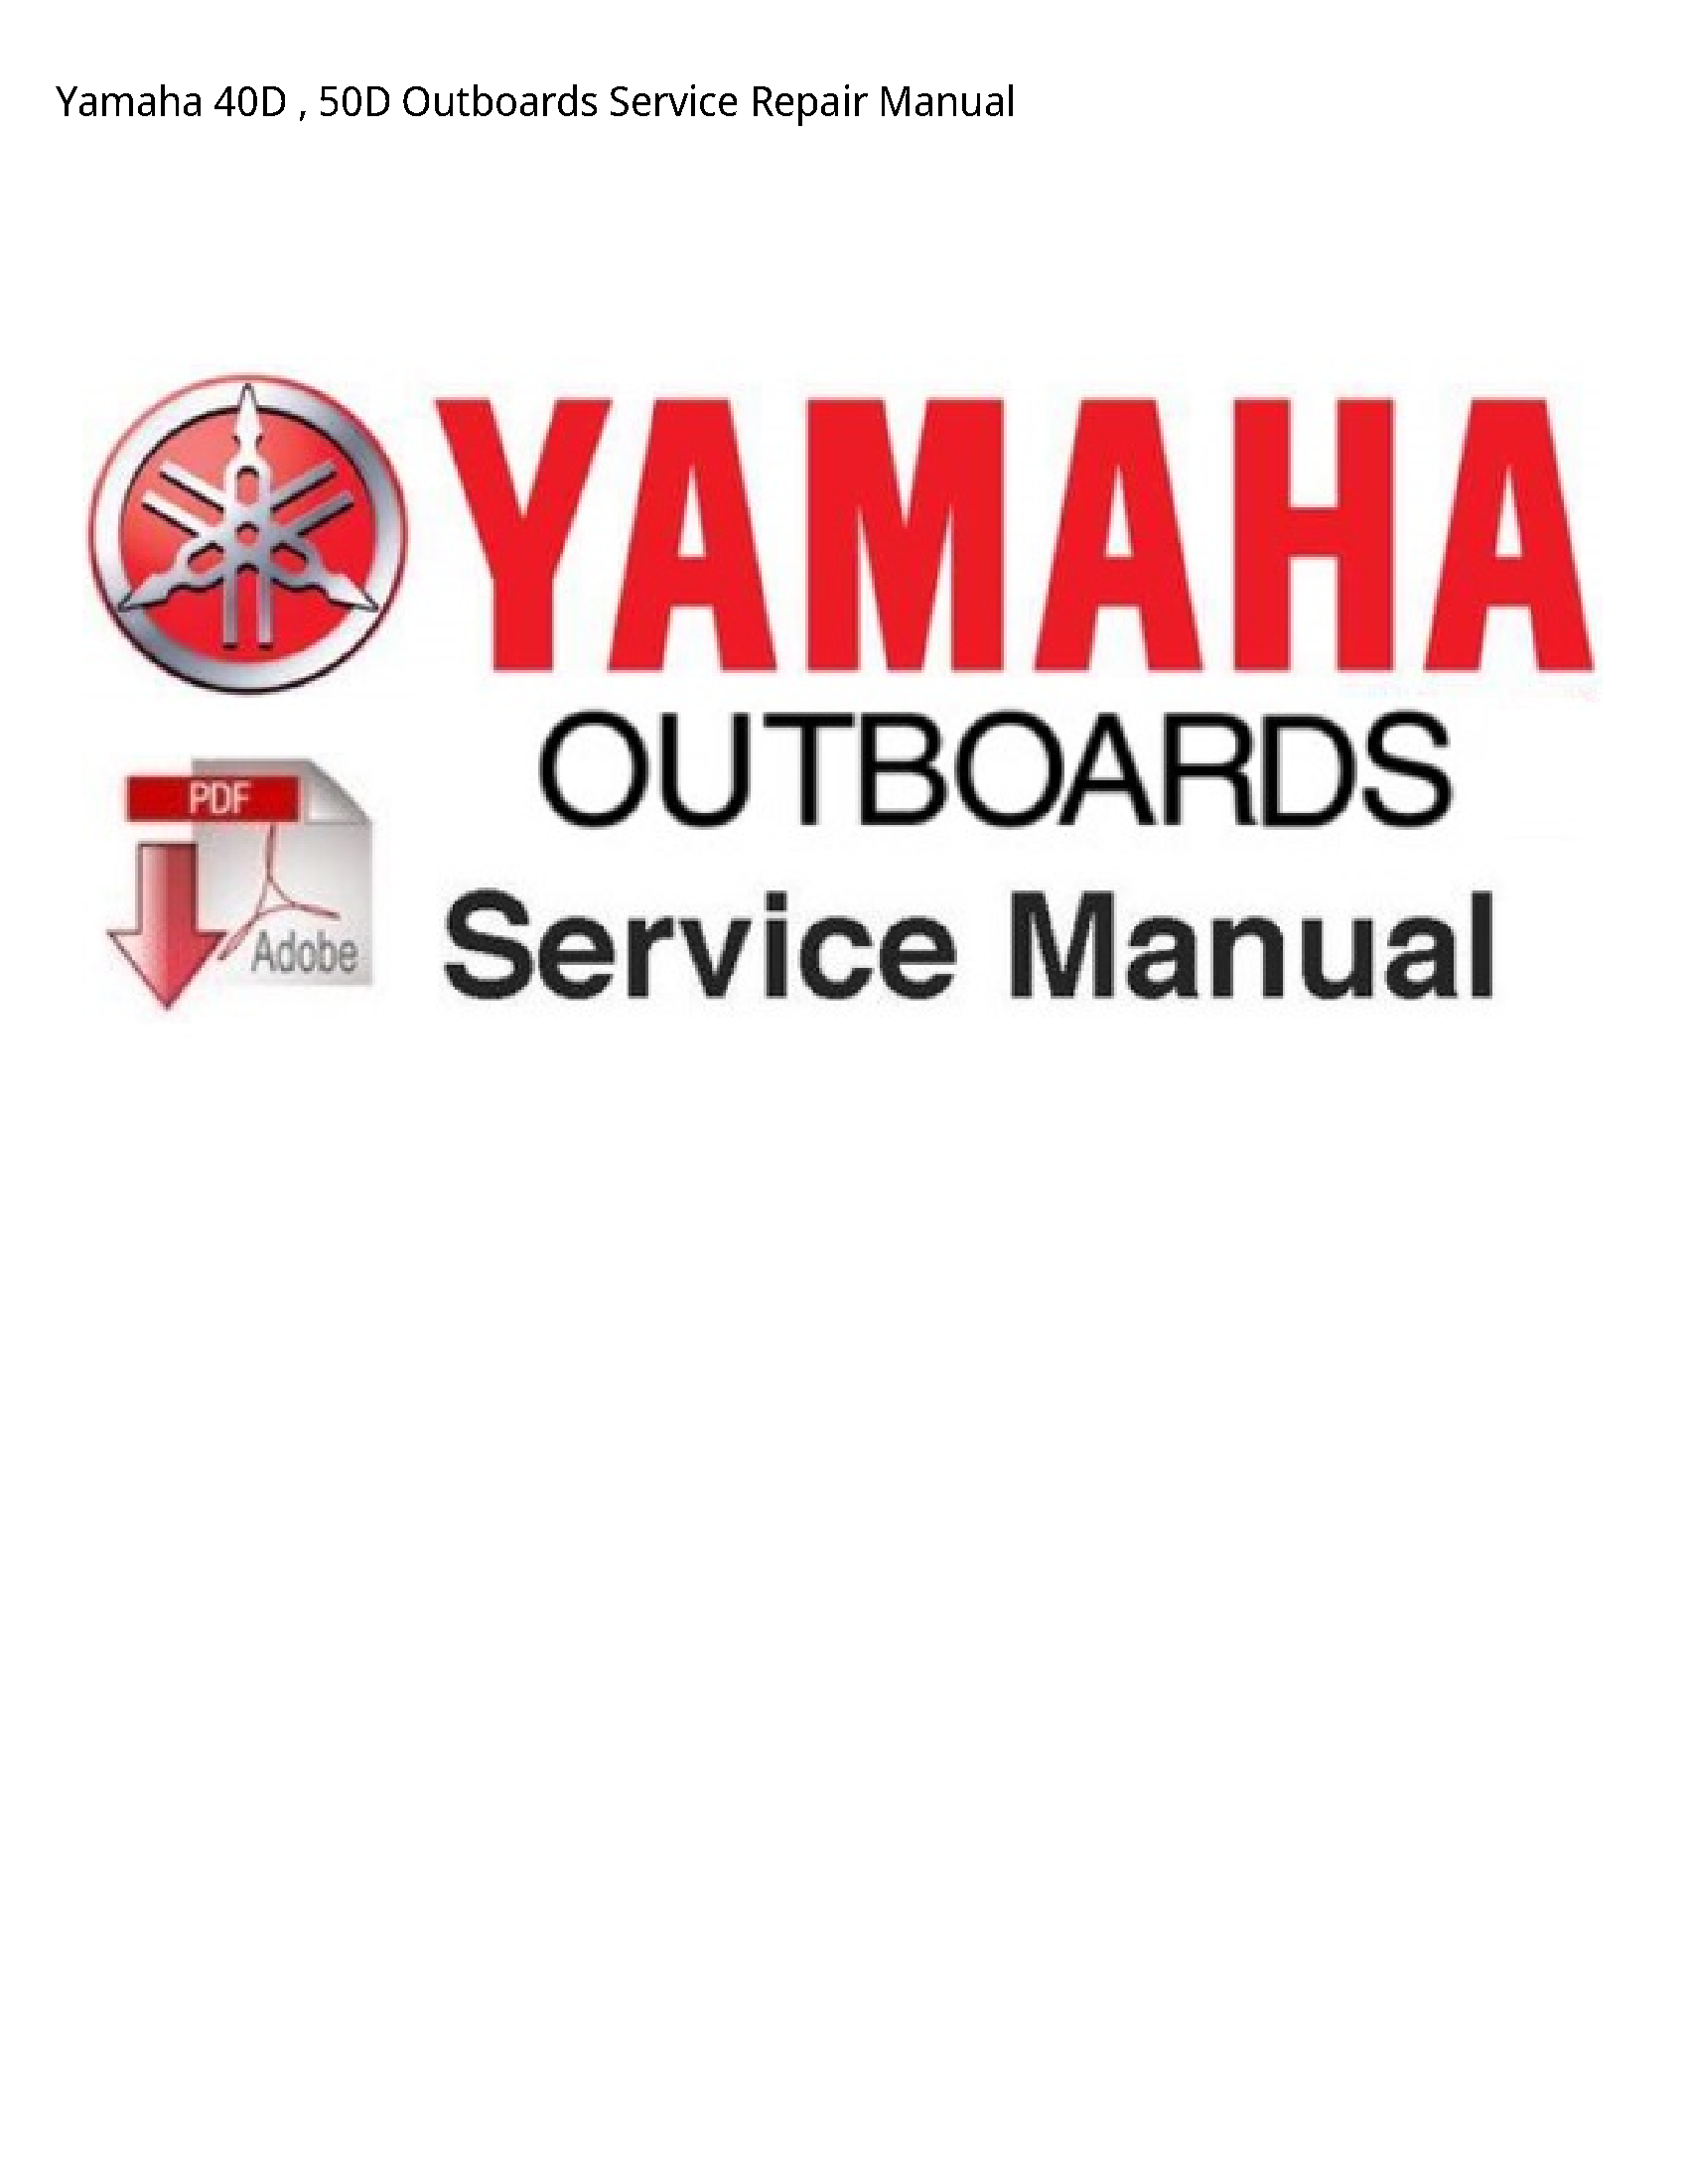 Yamaha 40D Outboards manual